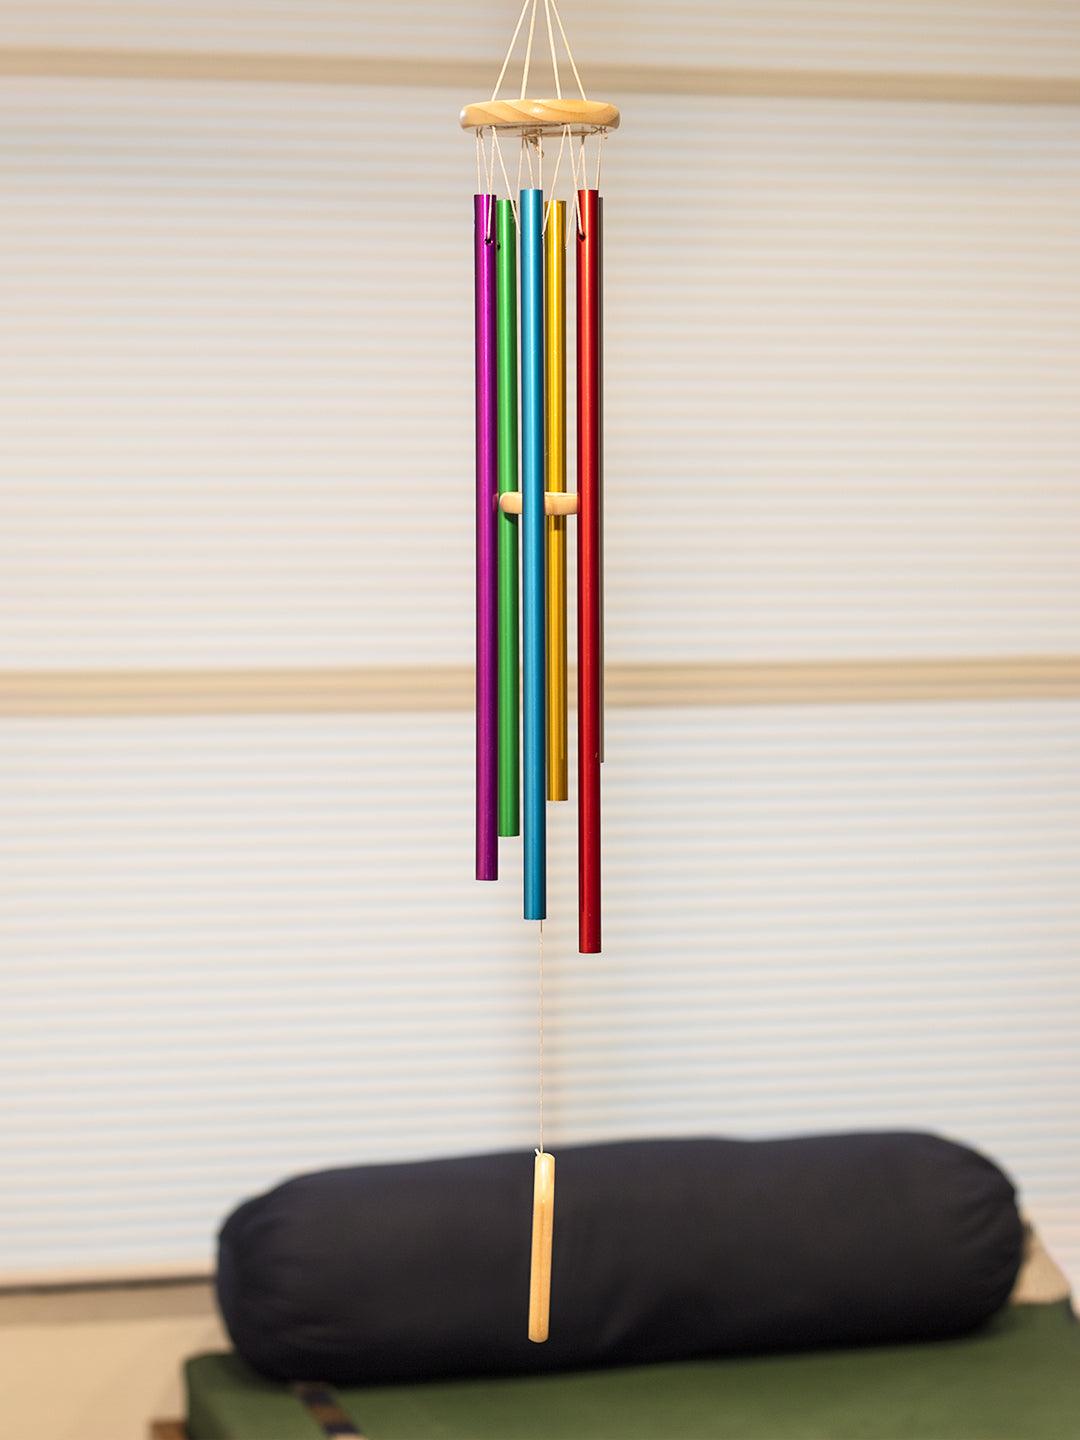 Unique Multicolor Decorative Wind Chime For Home - 8.5 X 8.5 X 74 Cm - 1